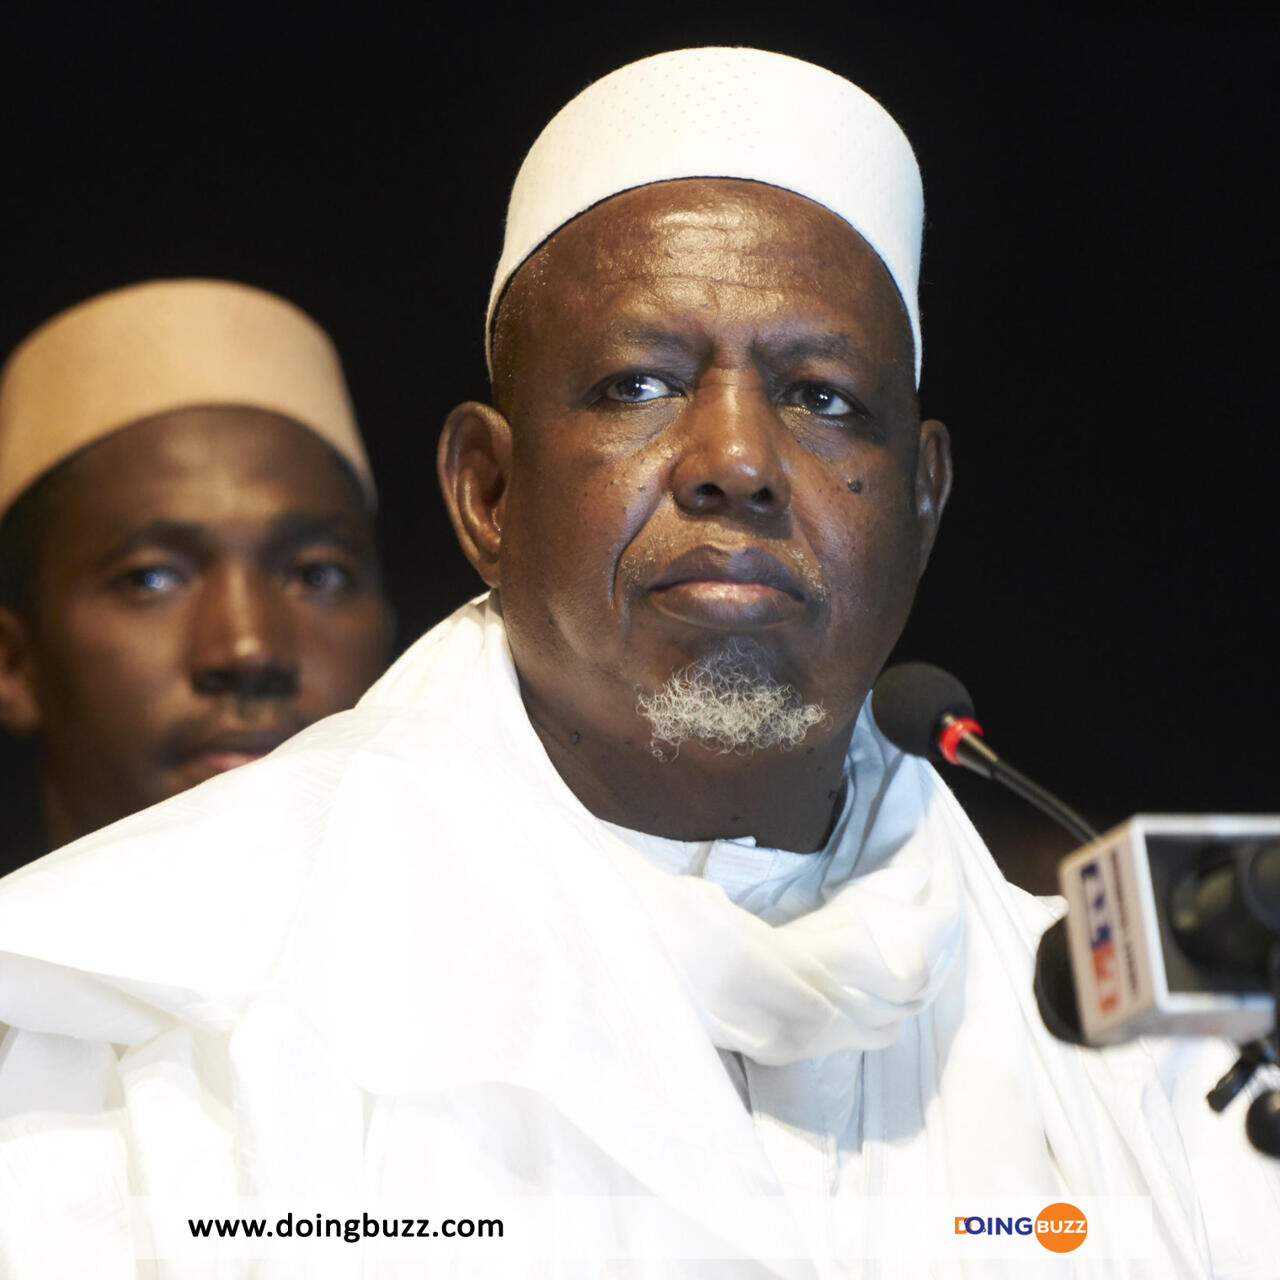 Mali : Dissolution D'Un Mouvement Critique Envers La Transition Militaire